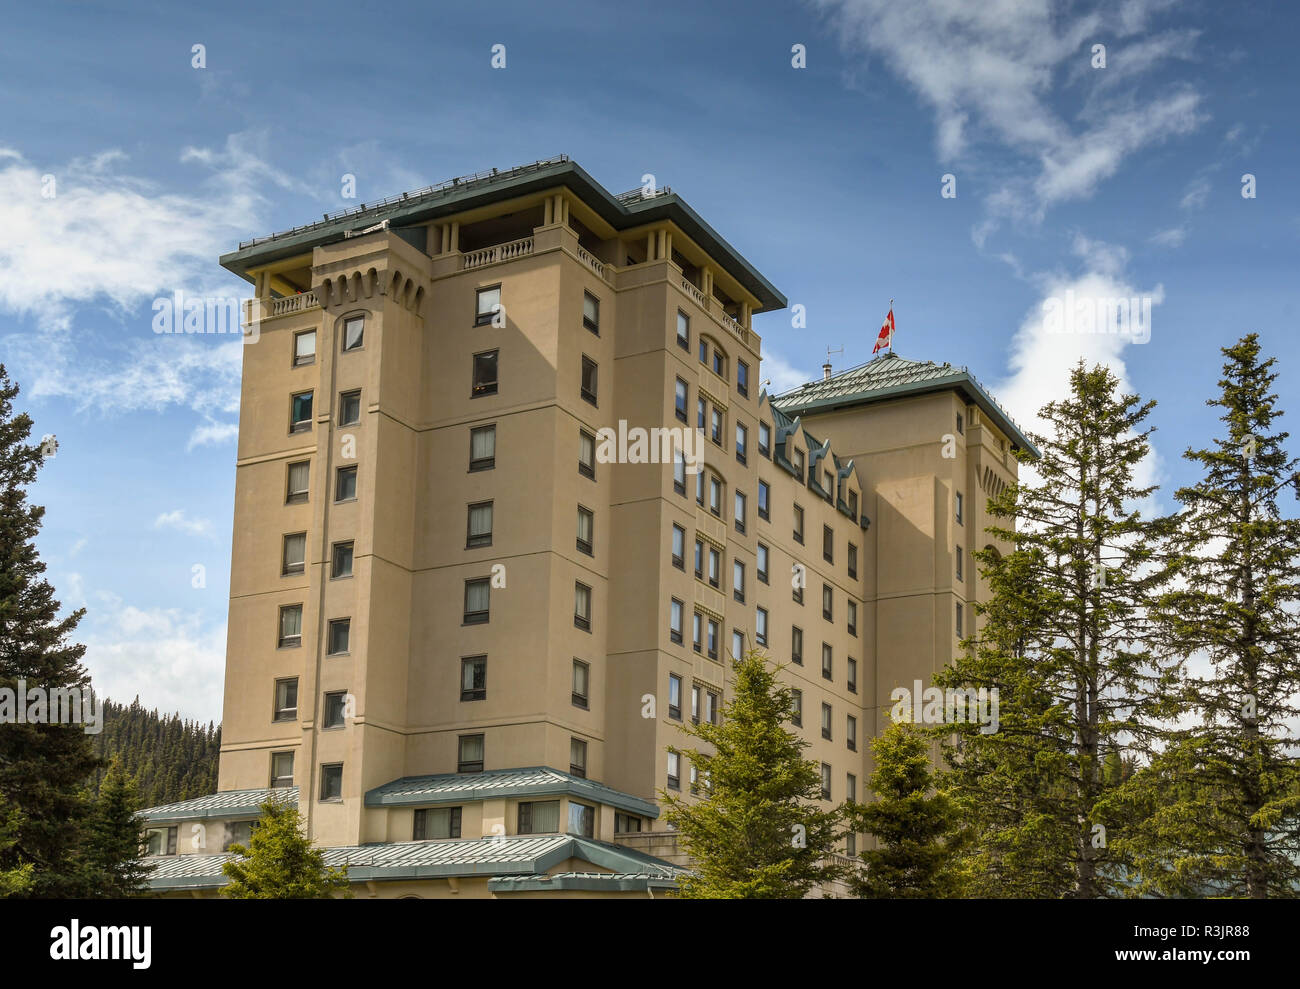 Il Lago Louise, AB, Canada - Giugno 2018: Il Fairmont Chateau Lake Louise hotel in Alberta, Canada. Foto Stock